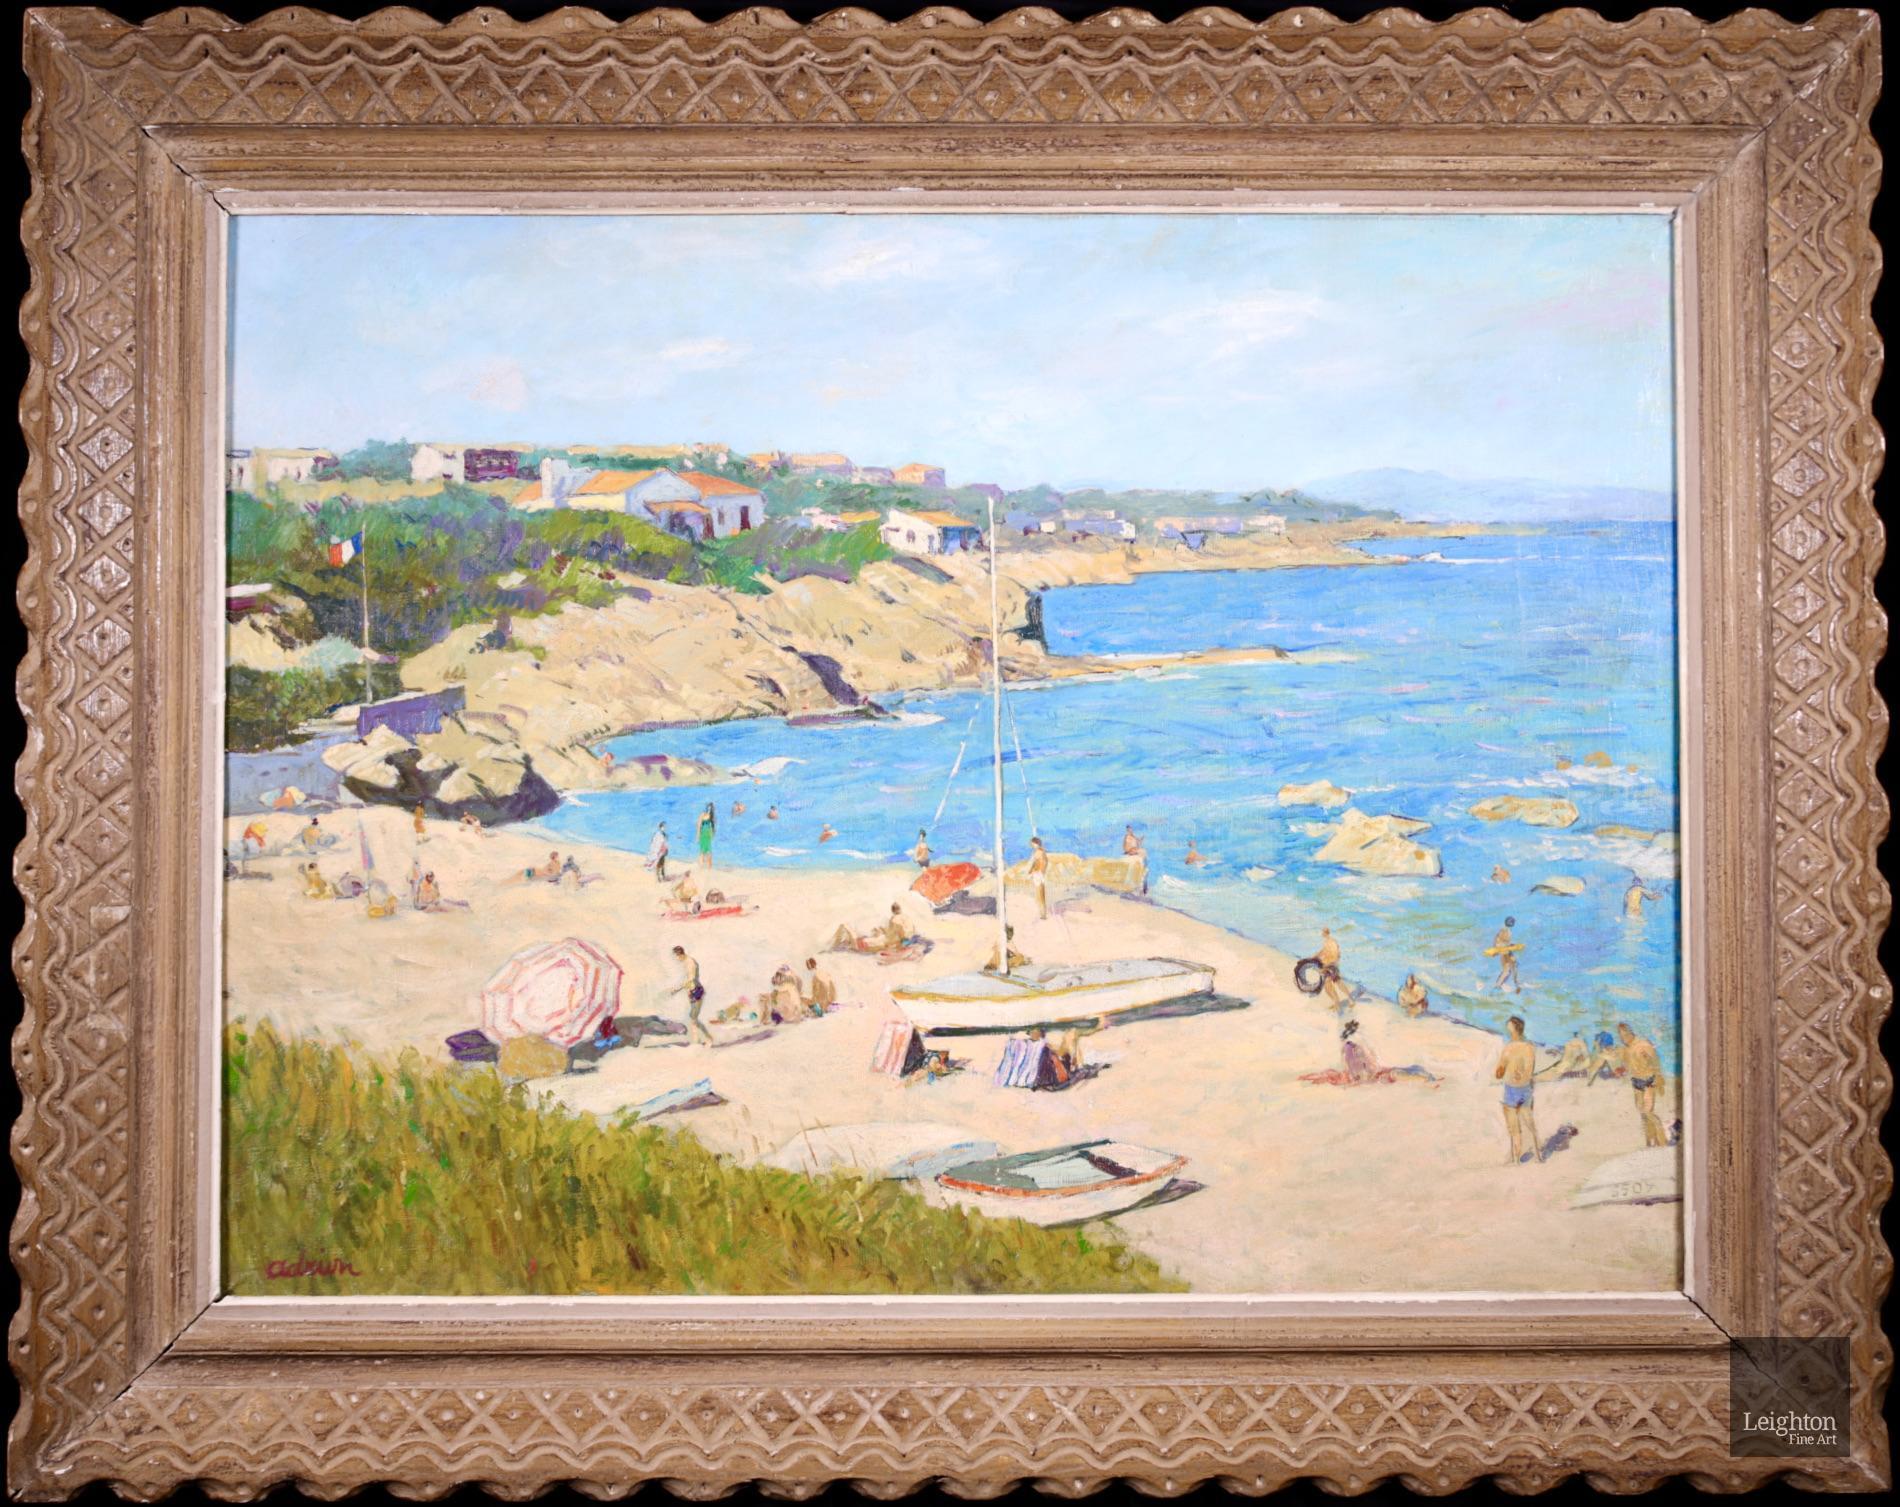 Magnifique huile sur toile signée de Lucien Adrion, peintre post-impressionniste français, circa 1940. Le tableau représente des familles profitant d'une journée d'été ensoleillée à la plage - certains se détendent sur le sable doré tandis que les